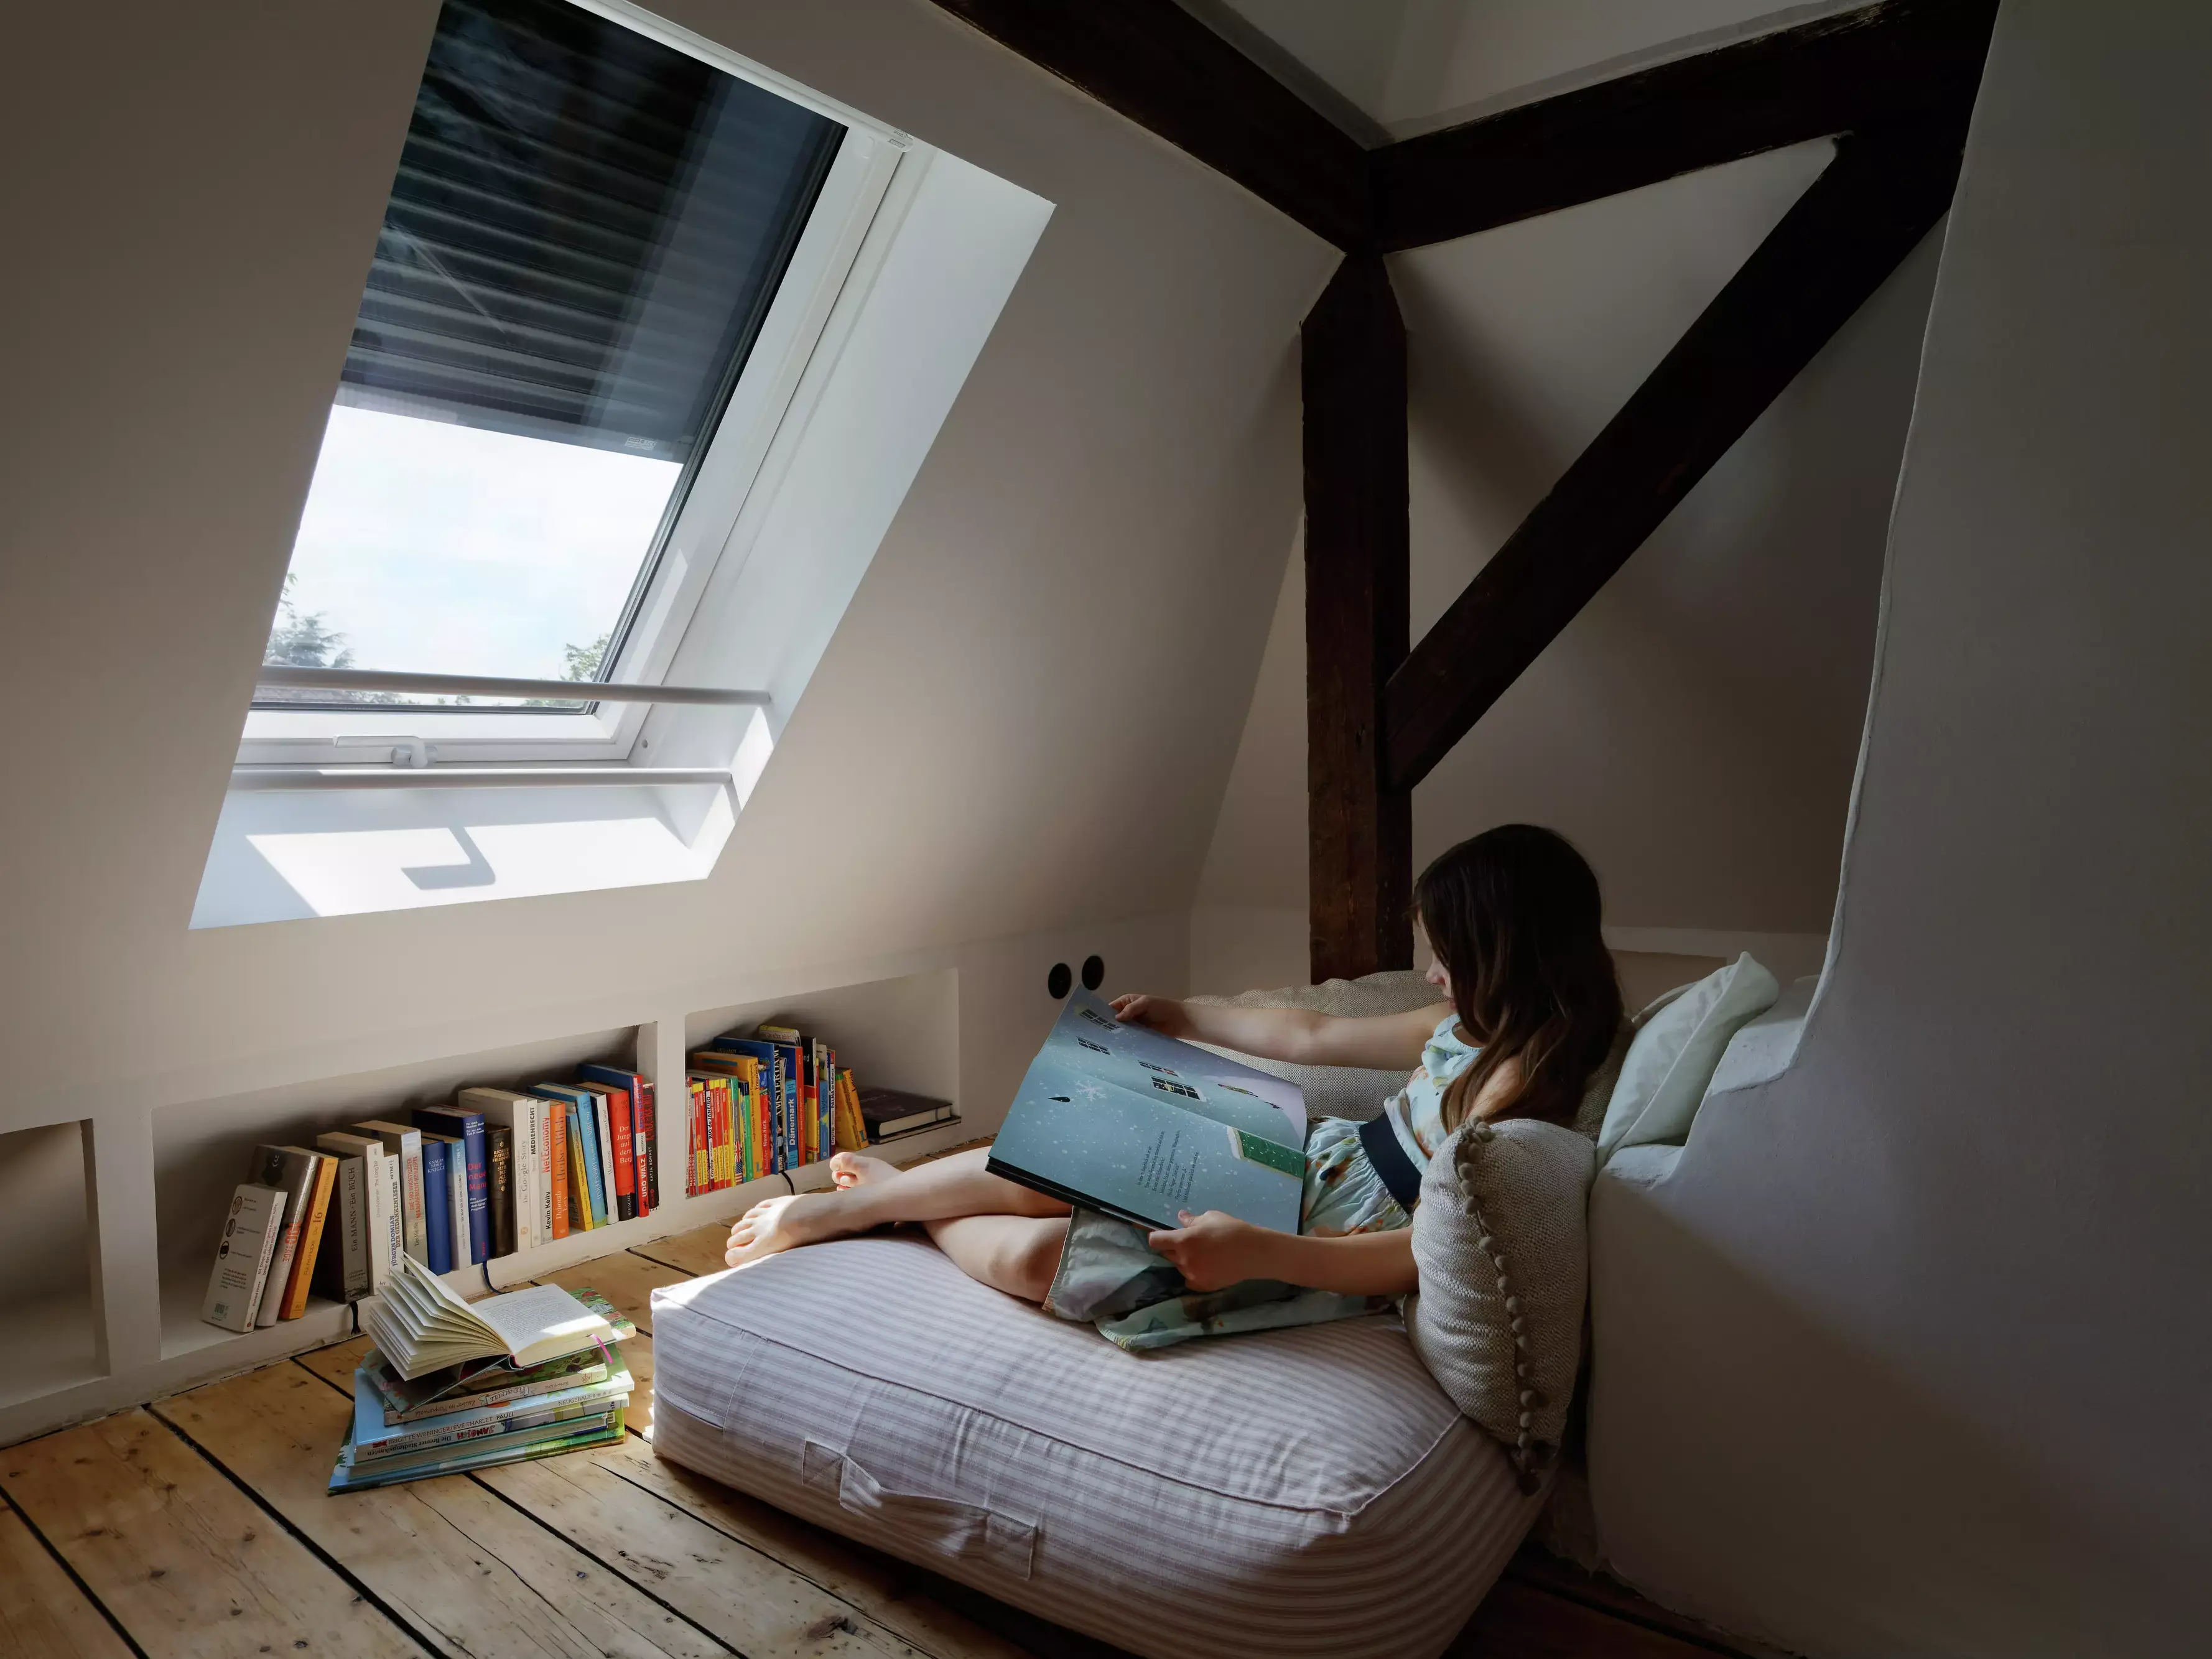 Une fille lit à proximité d'une fenêtre de toit VELUX, dont le volet est à moitié baissé.